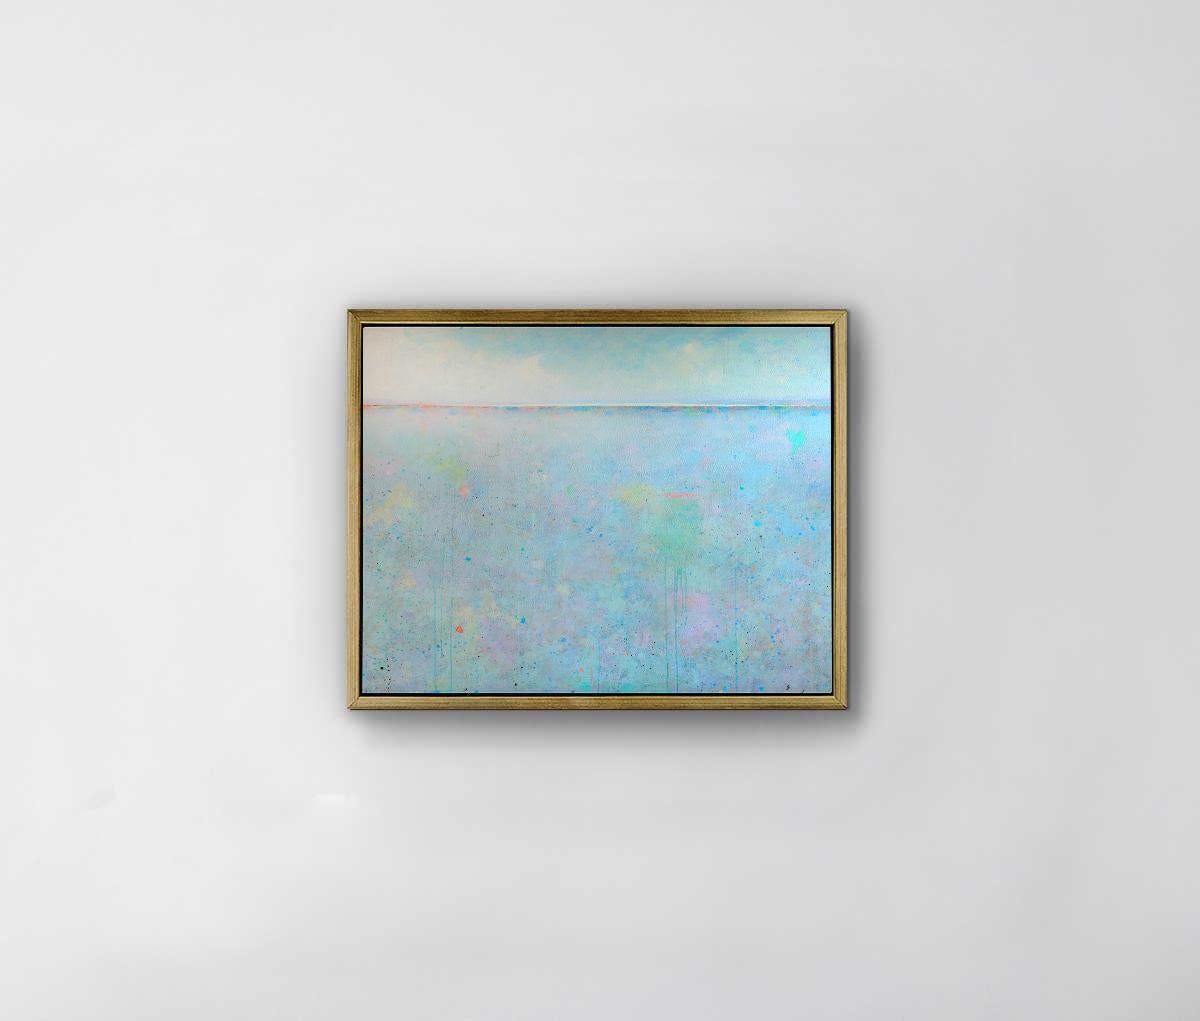 Ce paysage abstrait imprimé en édition limitée par Elwood Howell présente une ligne d'horizon élevée et une palette de bleu clair.  La partie du premier plan de la composition, sous la ligne d'horizon, présente des taches de couleurs vives et des